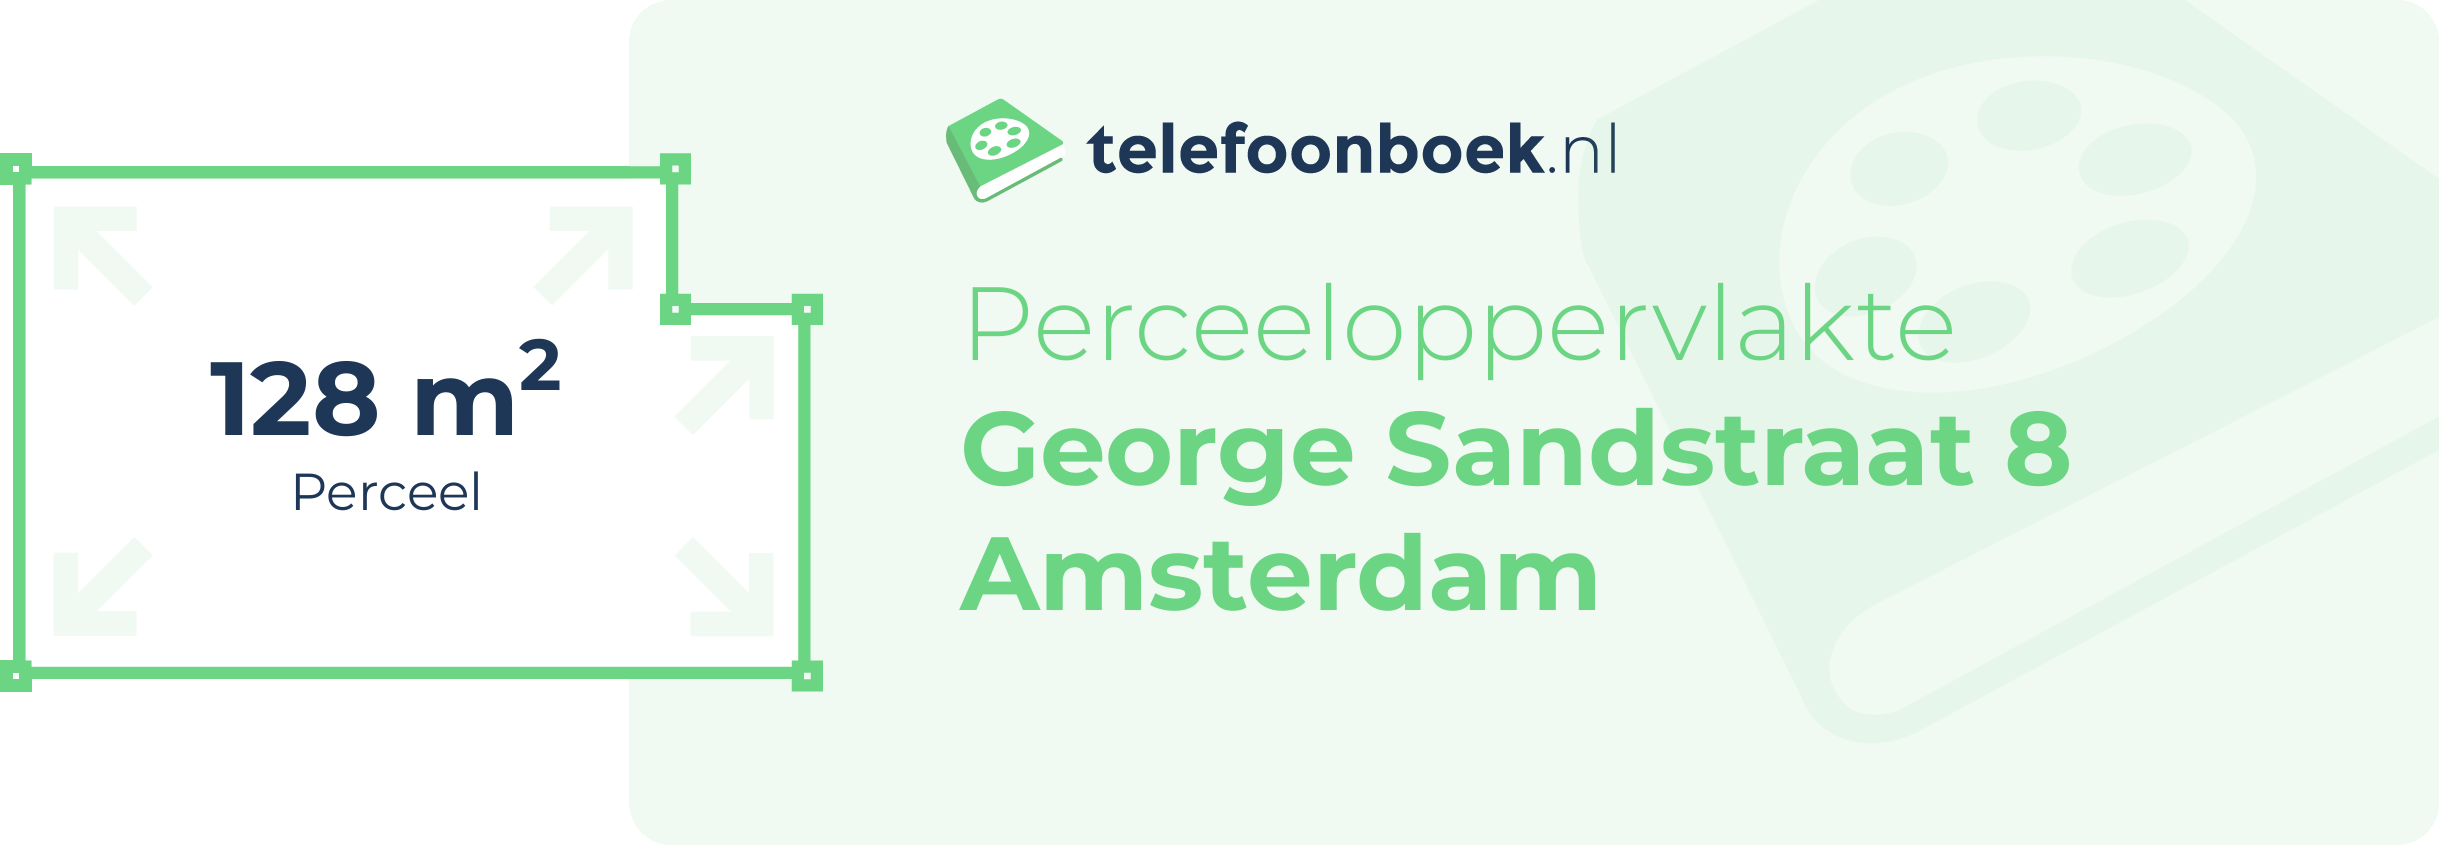 Perceeloppervlakte George Sandstraat 8 Amsterdam